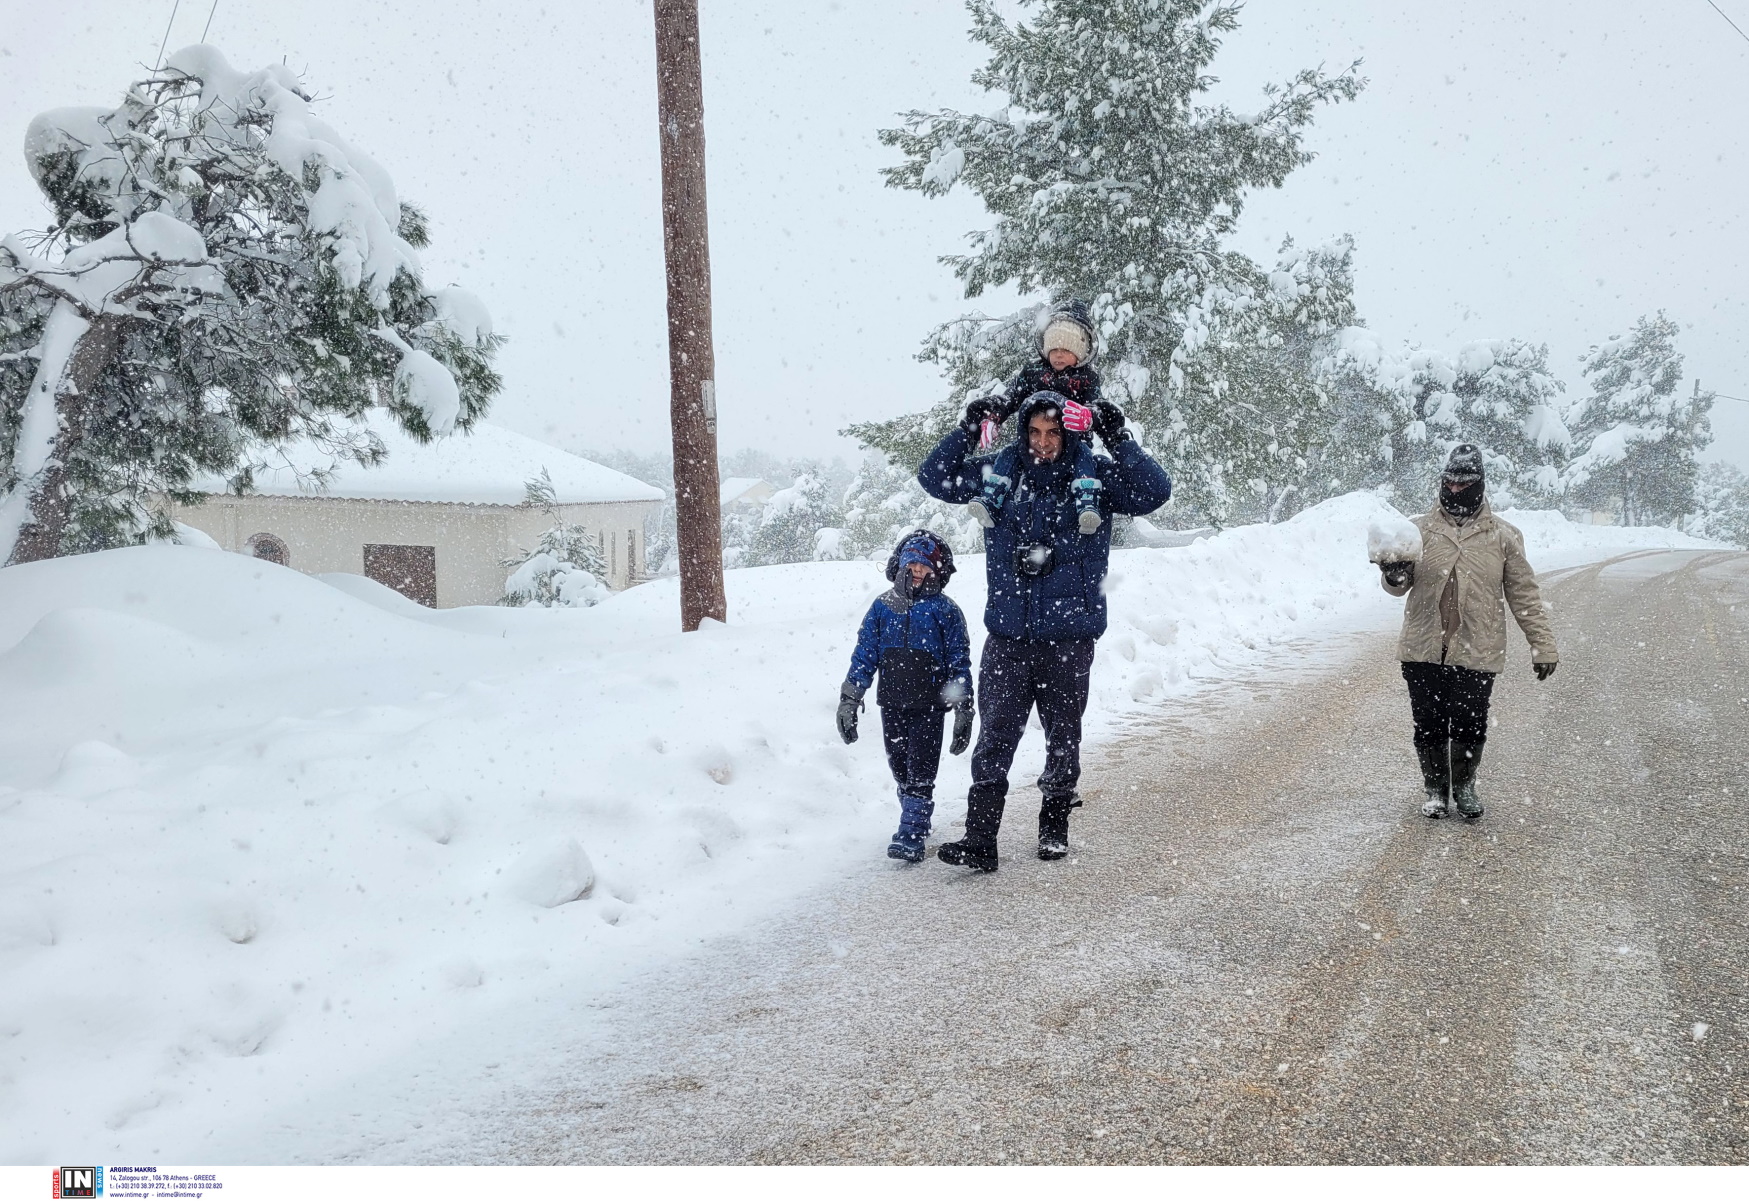  Ψυχρή εισβολή από Τετάρτη με 9 μποφόρ και χιόνια προβλέπει ο Καλλιάνος - Οι περιοχές που θα ντυθούν στα λευκά